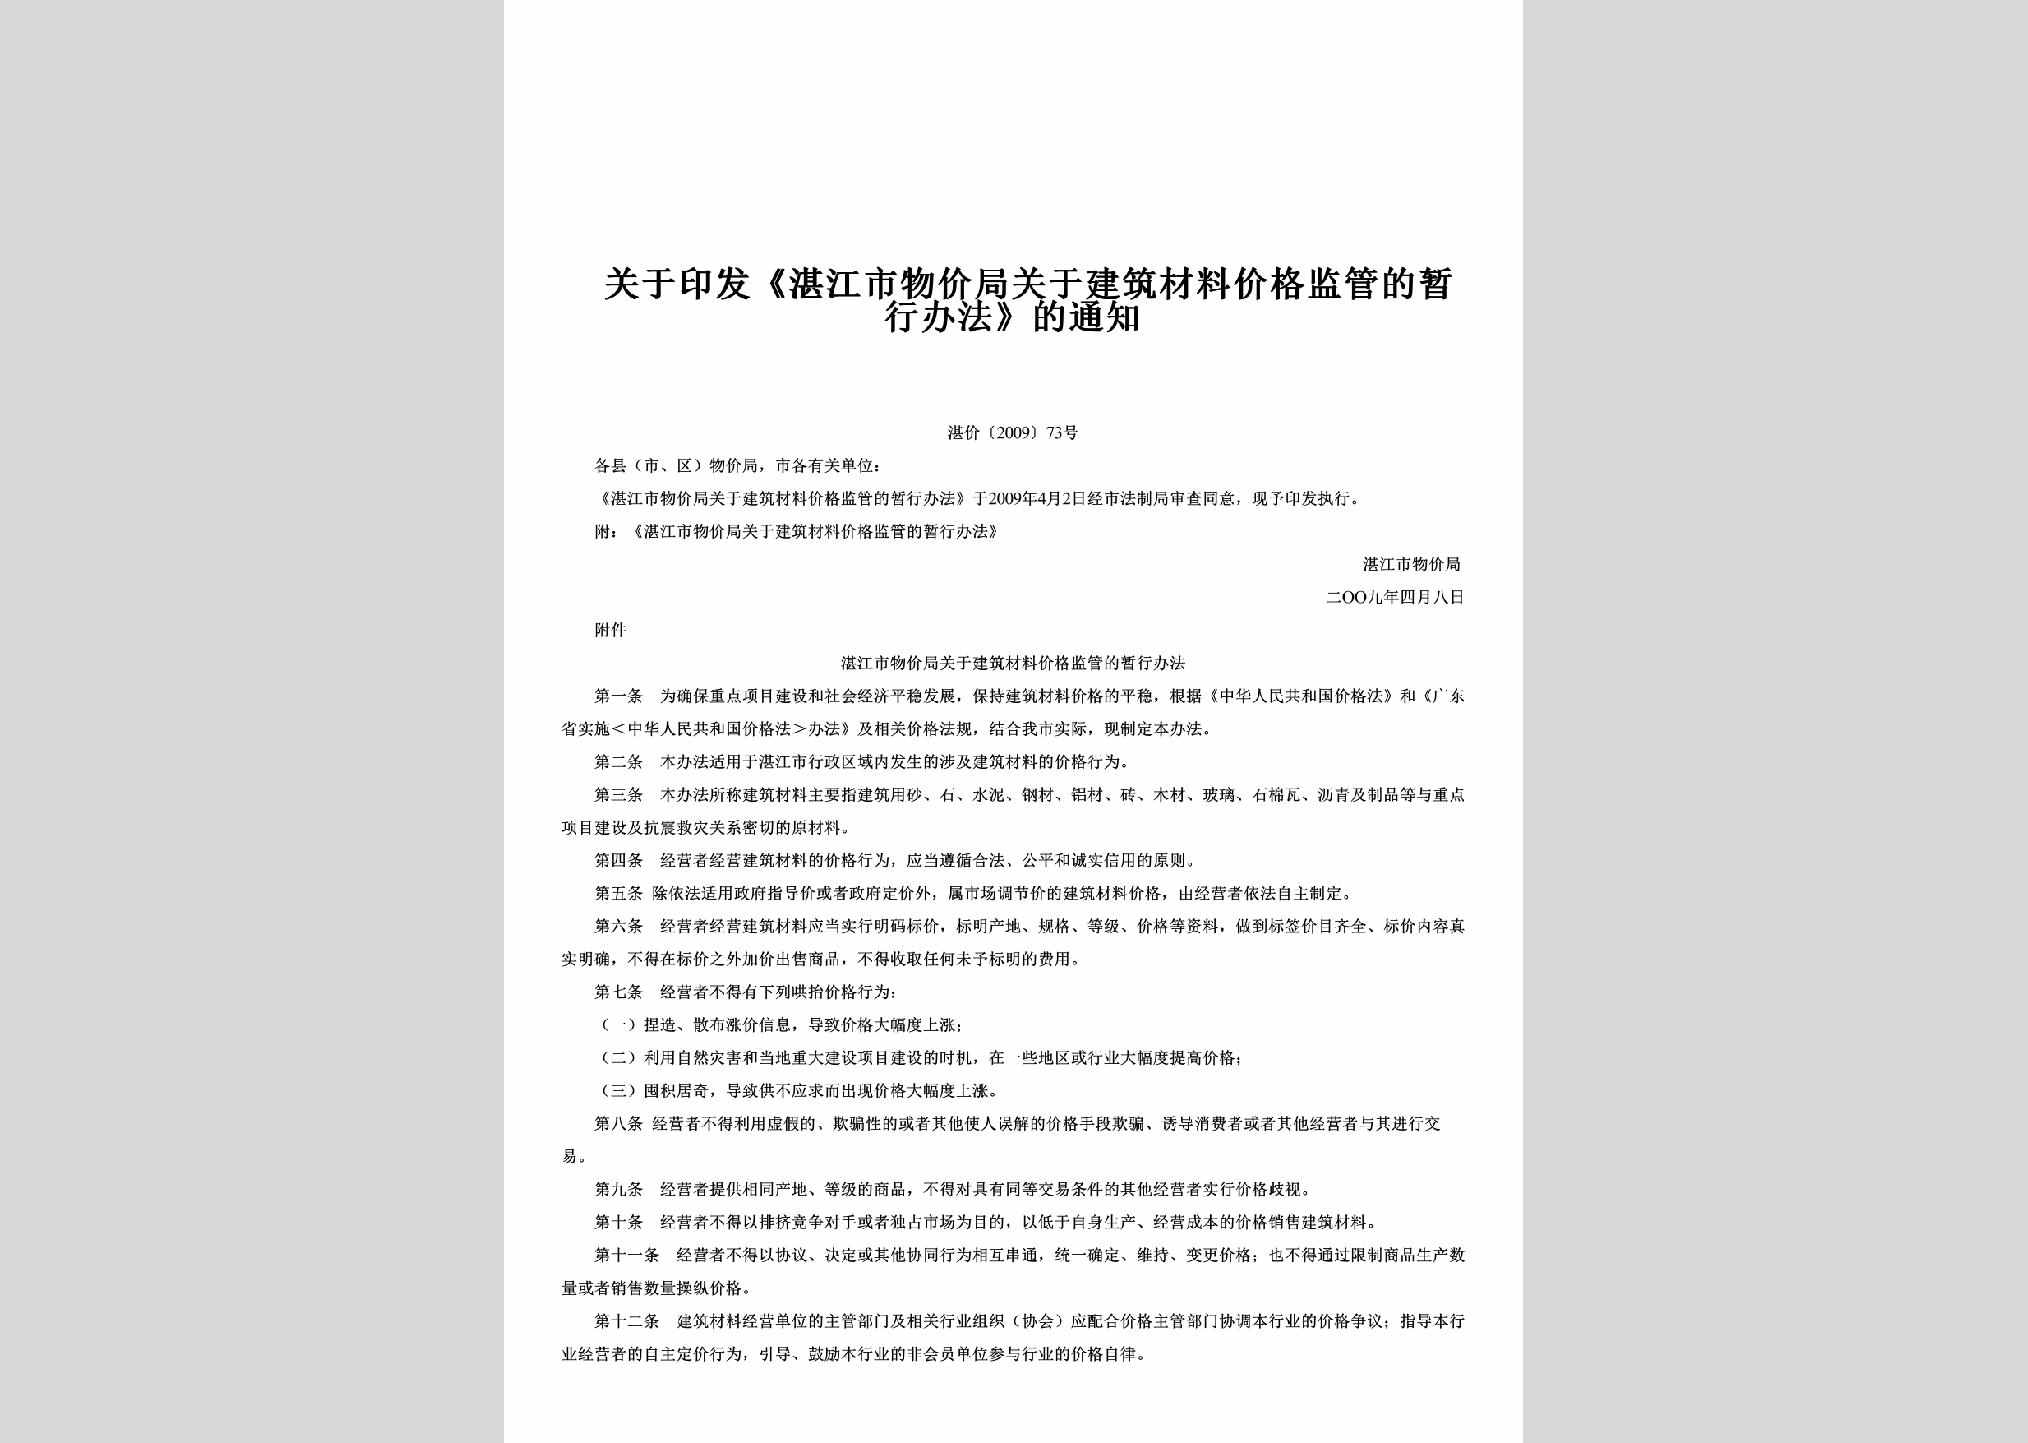 湛价[2009]73号：关于印发《湛江市物价局关于建筑材料价格监管的暂行办法》的通知